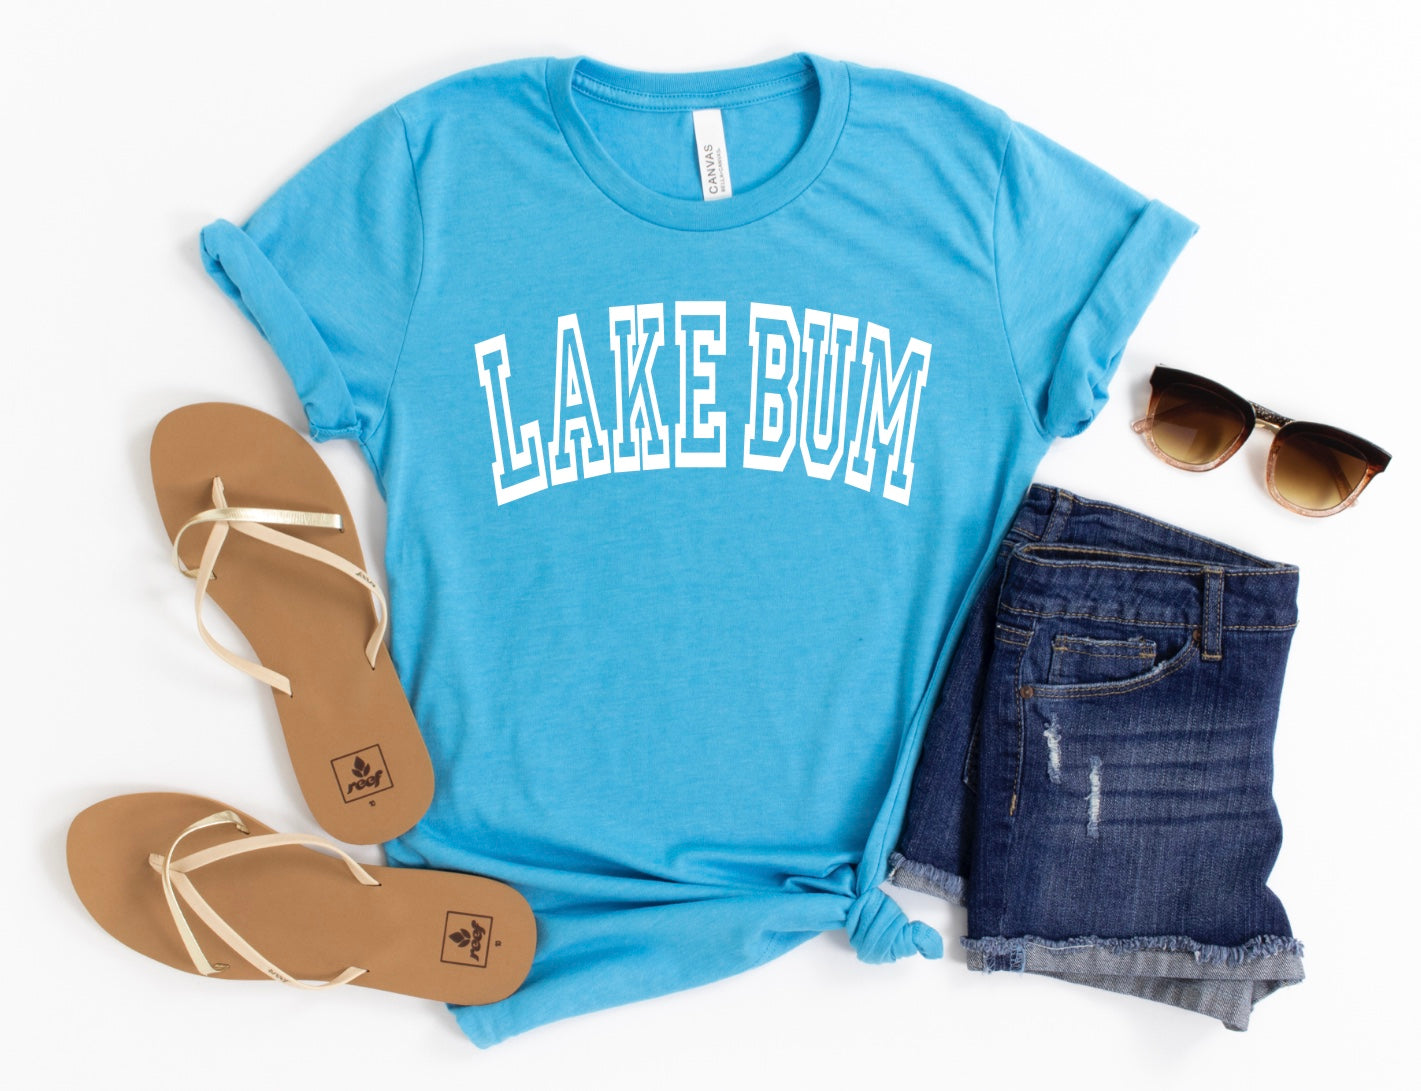 Lake bum t-shirt 